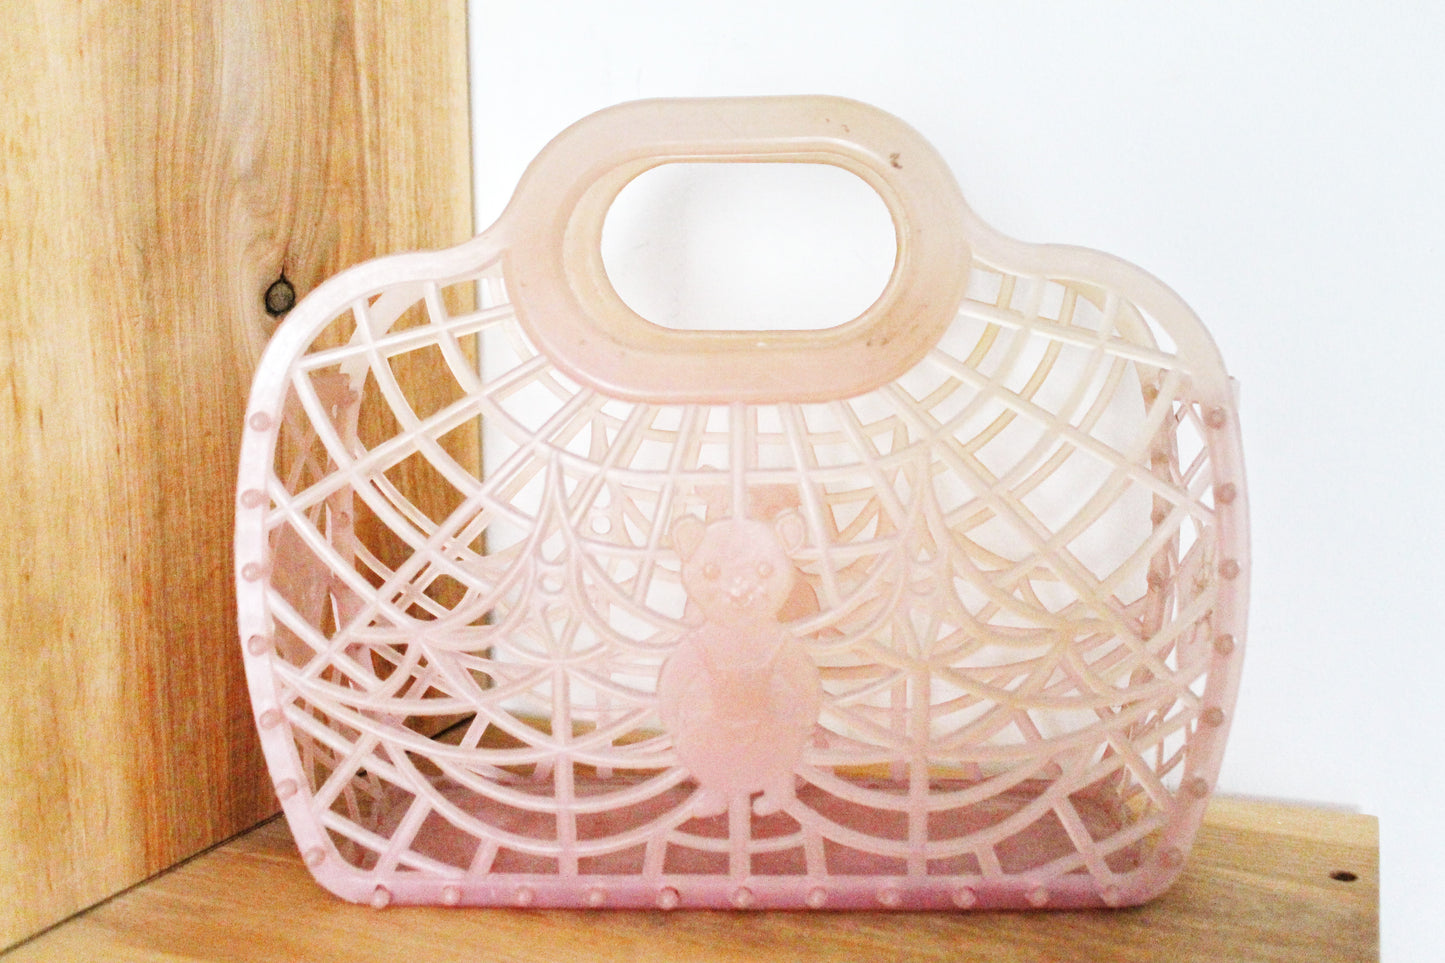 Vintage pink kids basket 10 inches - Go shopping - Made in USSR - Vintage home bag - Plastic basket - Picnic basket - reusable bag - 1970s